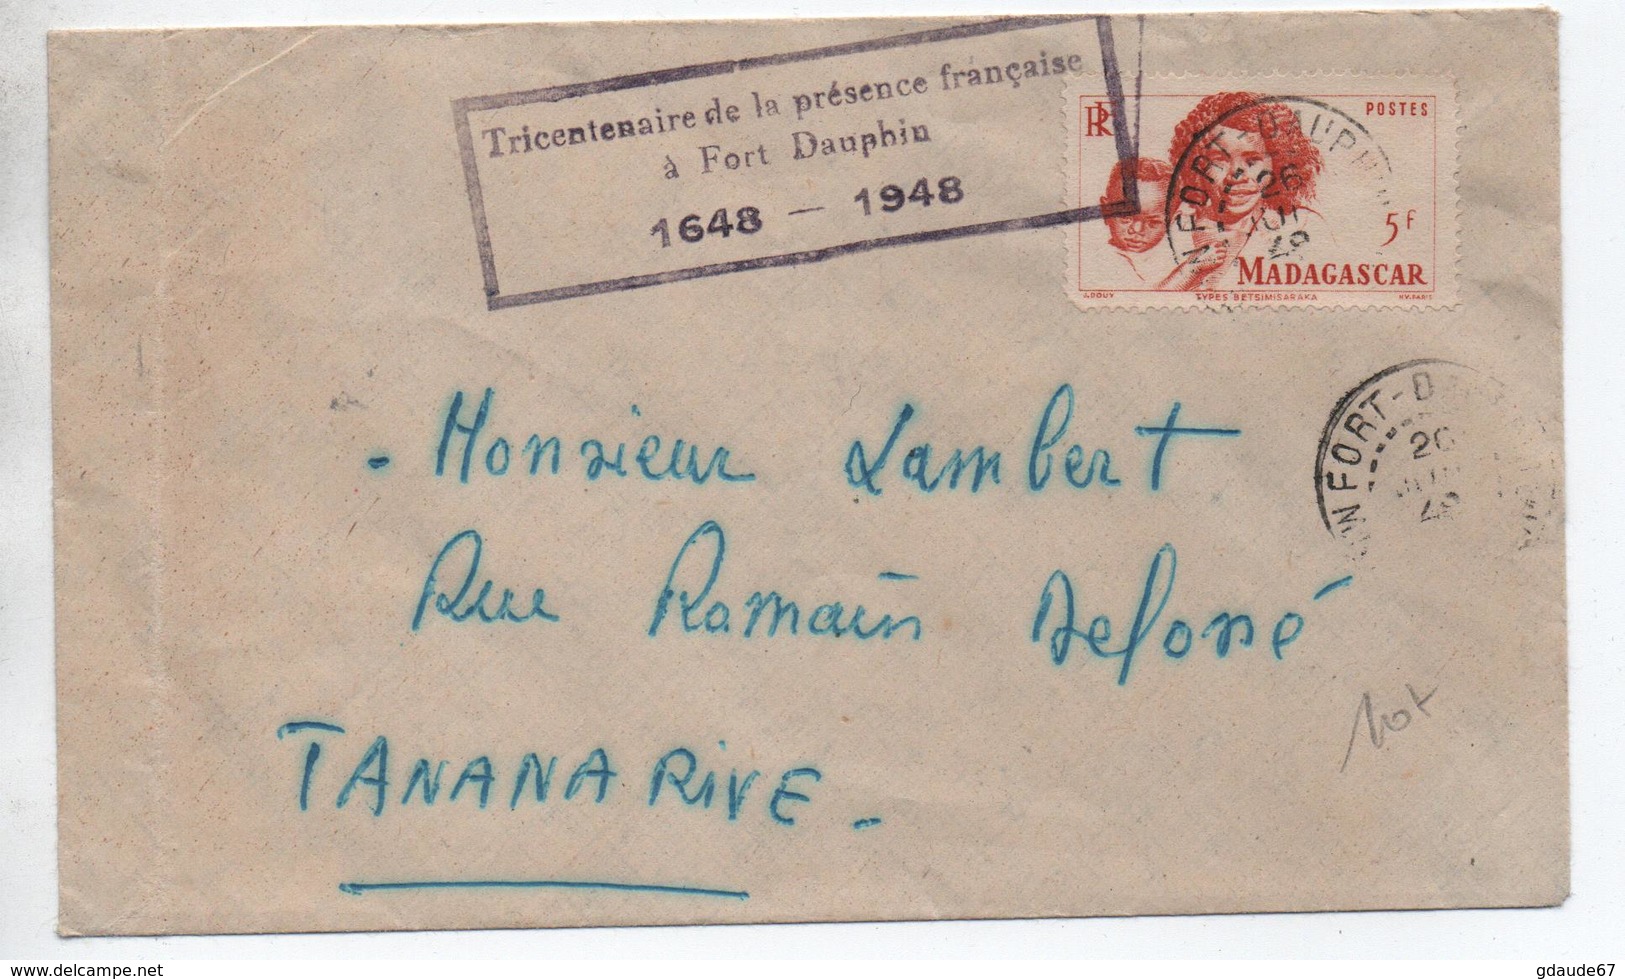 1948 - ENVELOPPE De FORT DAUPHIN (MADAGASCAR) Avec CACHET "TRICENTENAIRE DE LA PRESENCE FRANCAISE A FORT DAUPHIN 1648" - Storia Postale